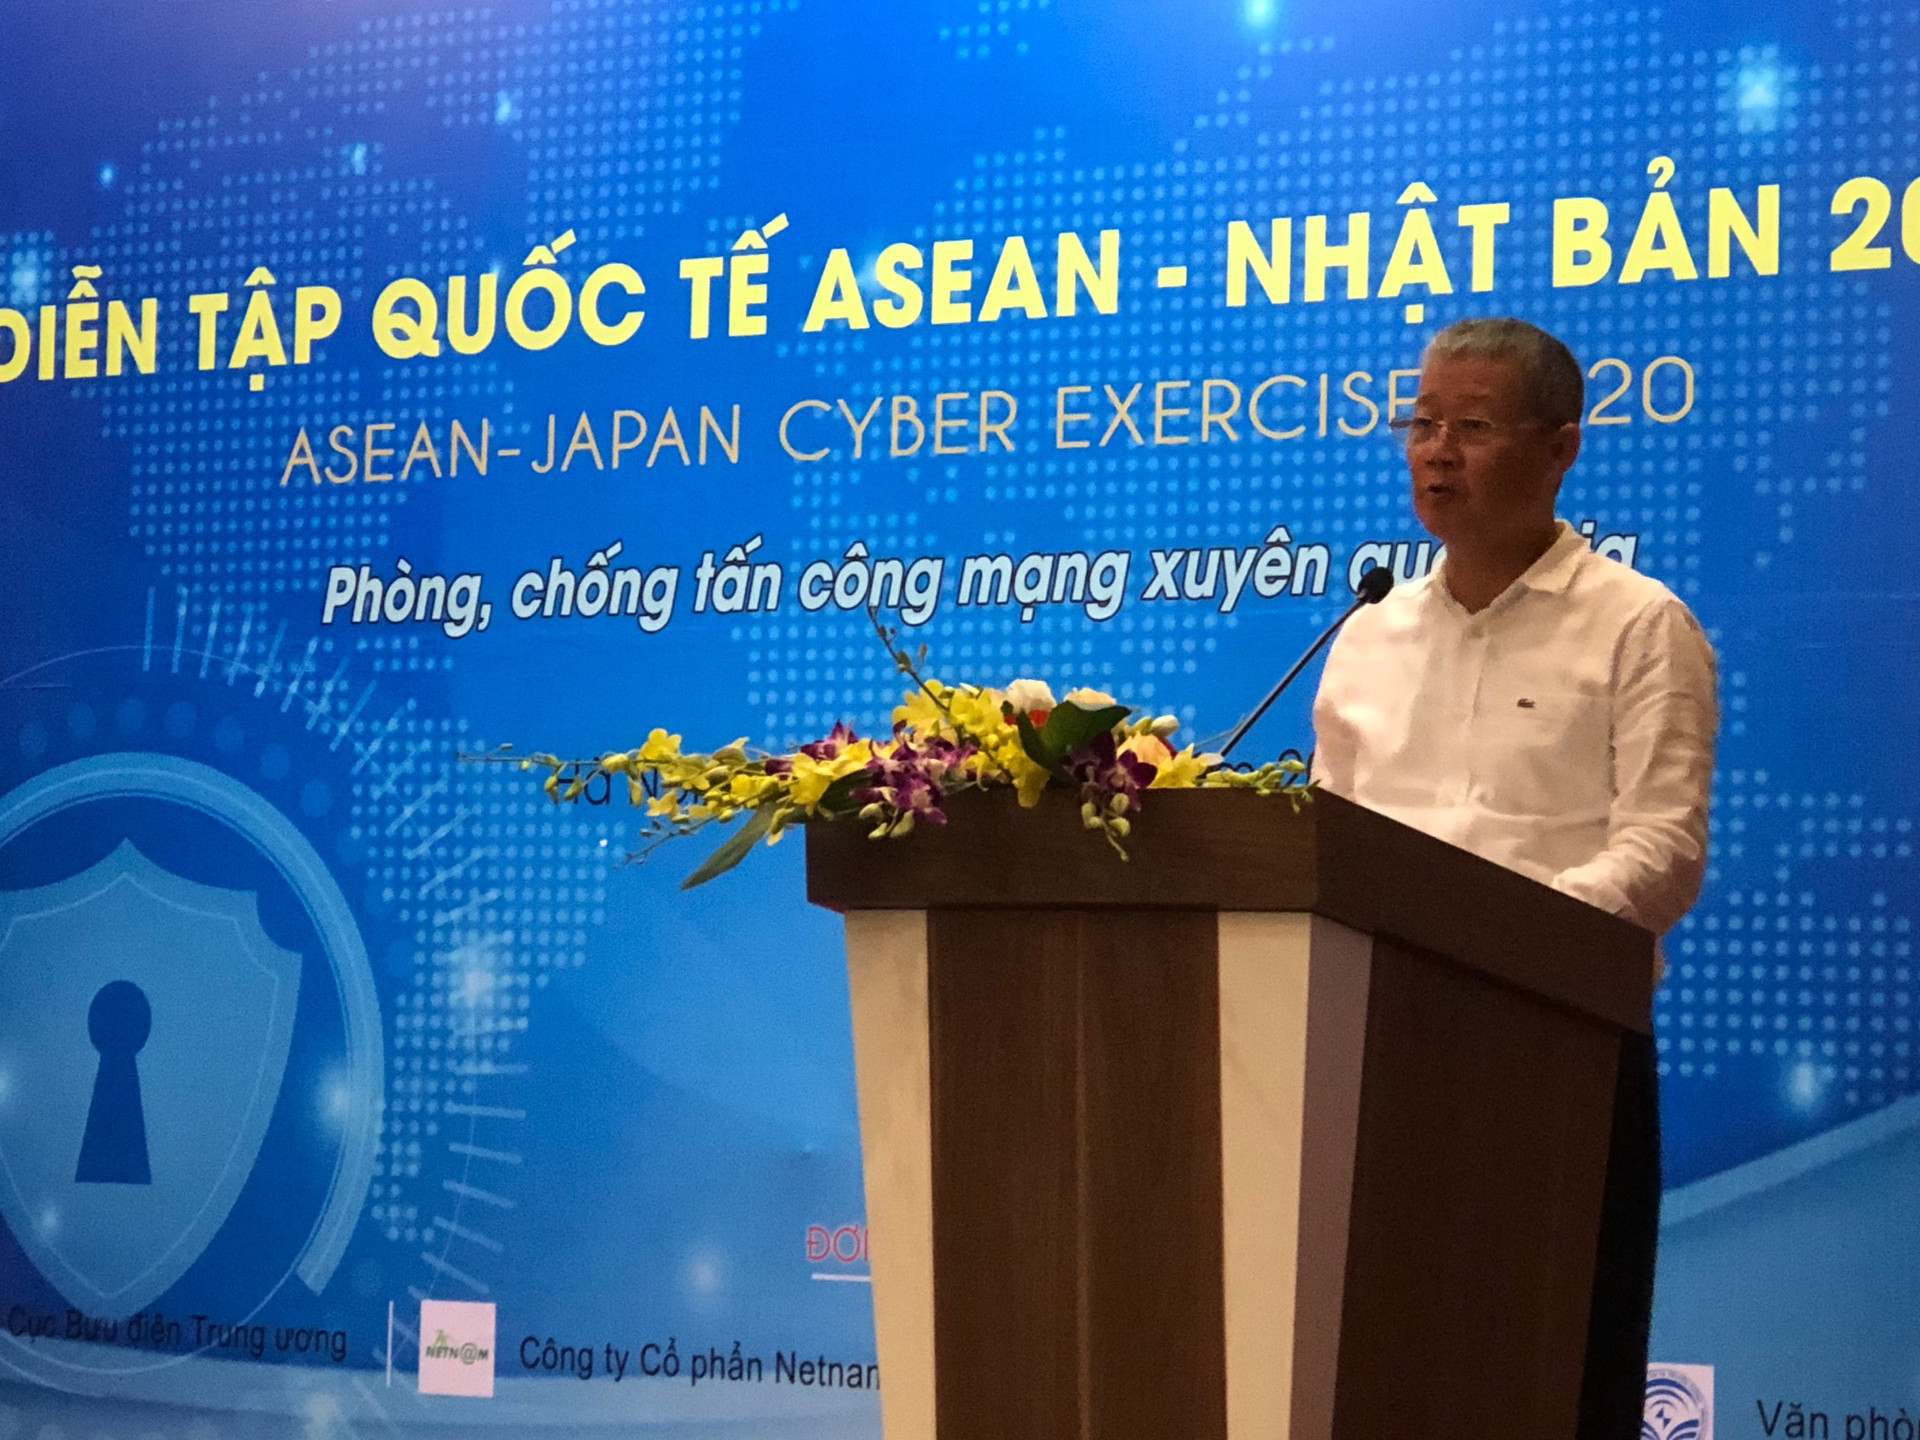 Hơn 200 chuyên gia ASEAN - Nhật Bản tìm cách phòng chống tấn công mạng xuyên quốc gia  - Ảnh 1.